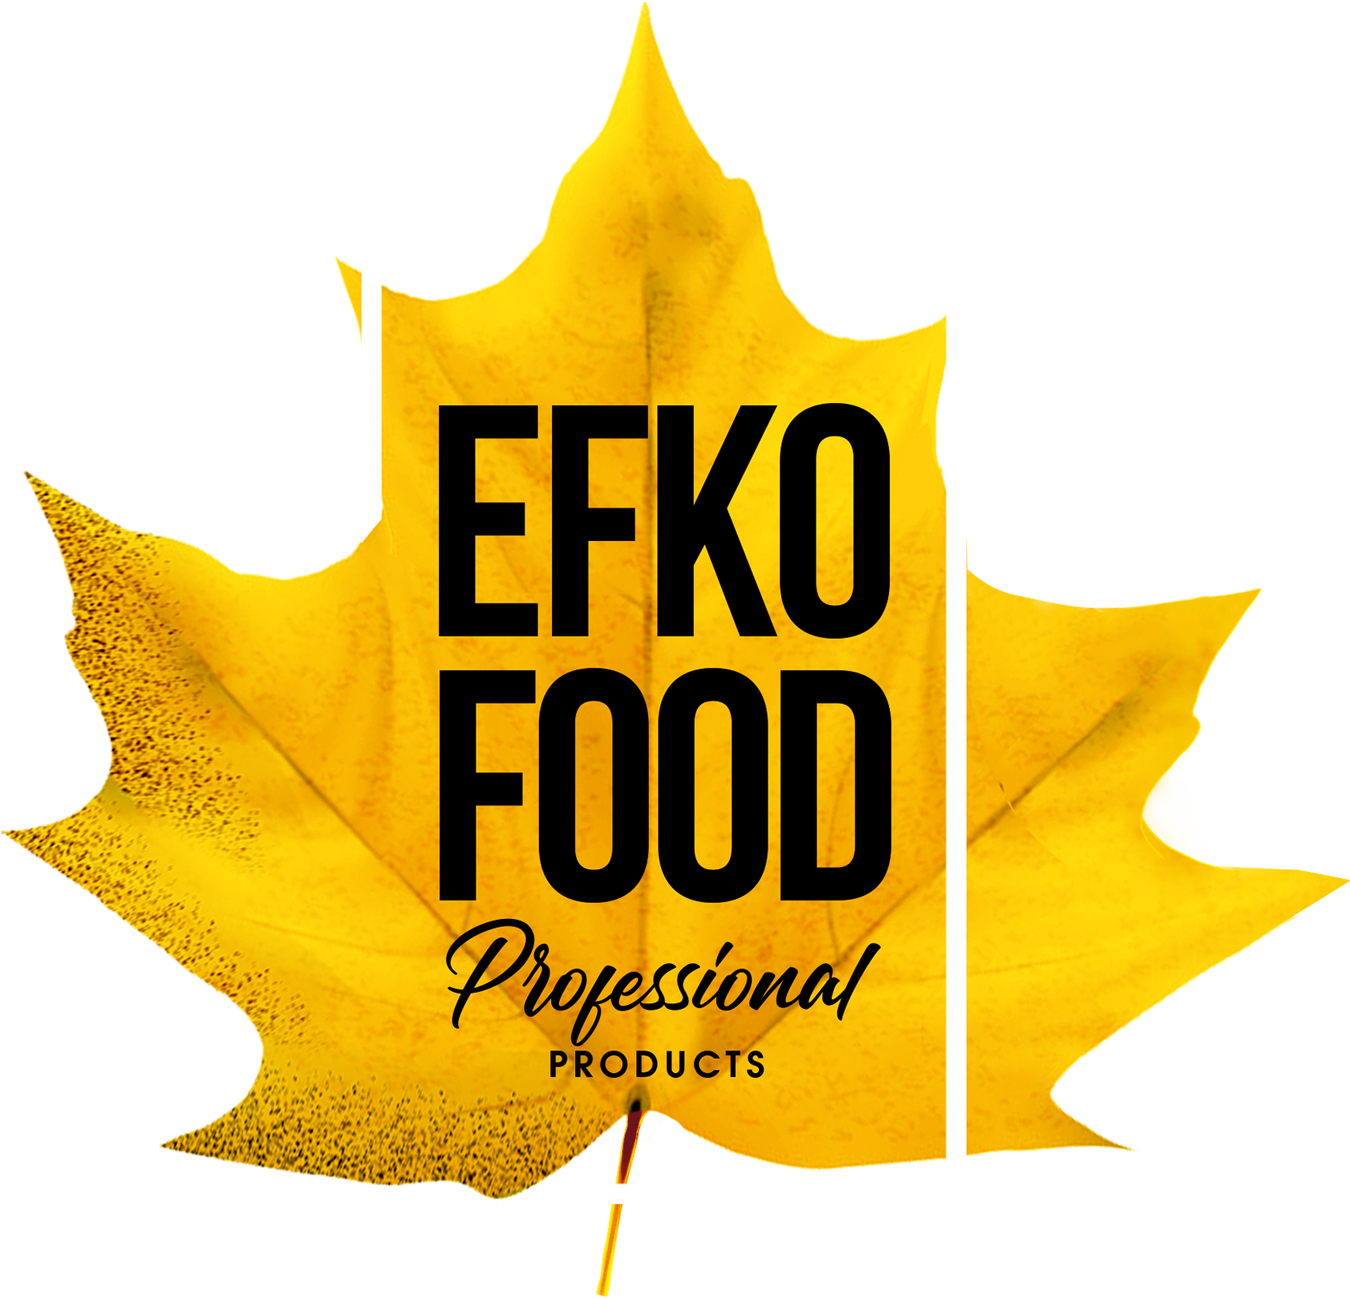 Efko Food